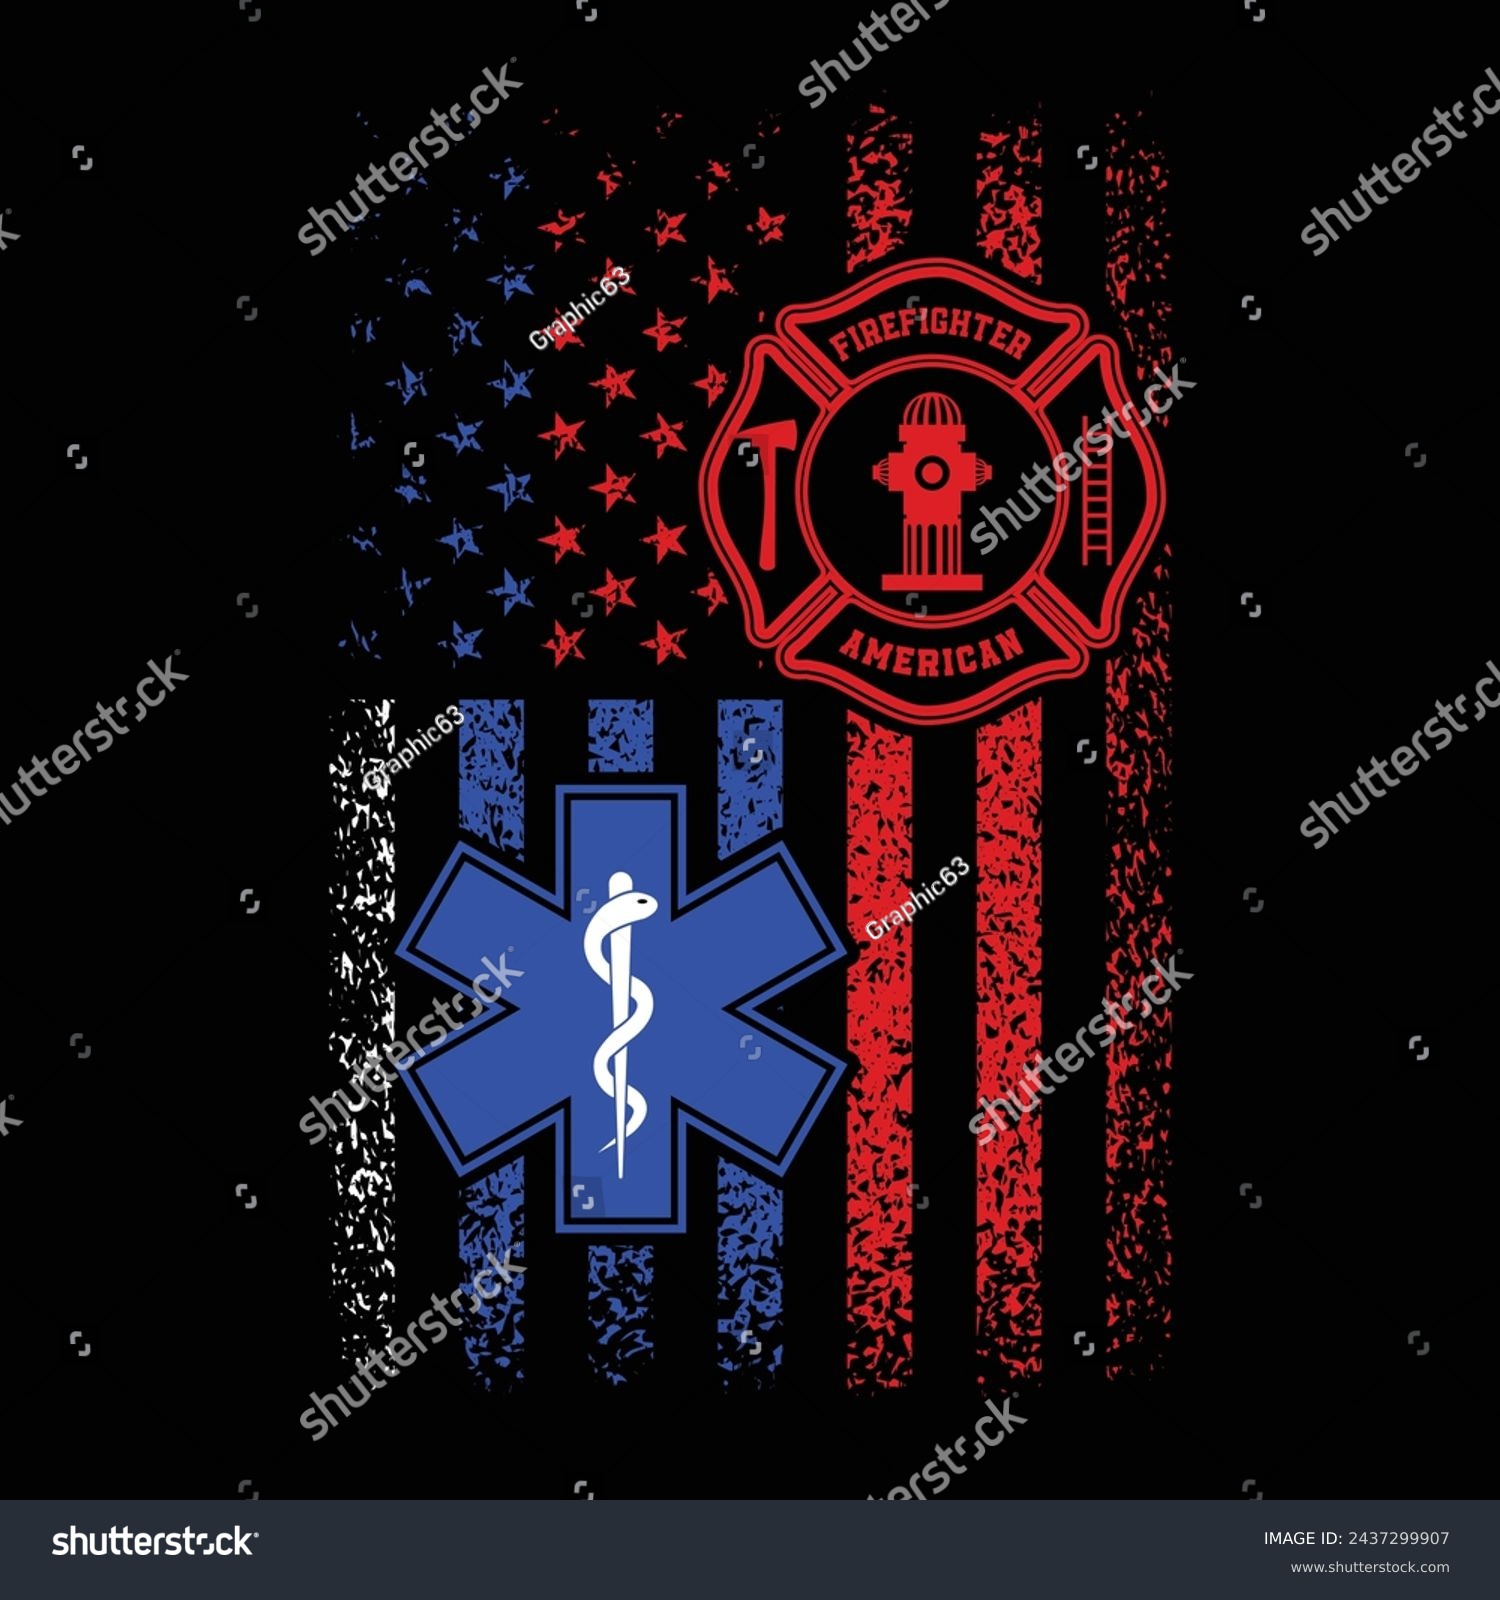 SVG of National First Responders Flag.I Support First Responders Flag.Distressed American Flag Ems Emergency Medical Service and Firefighter Logo Symbol Design For T Shirt Poster Banner Backround Vector. svg